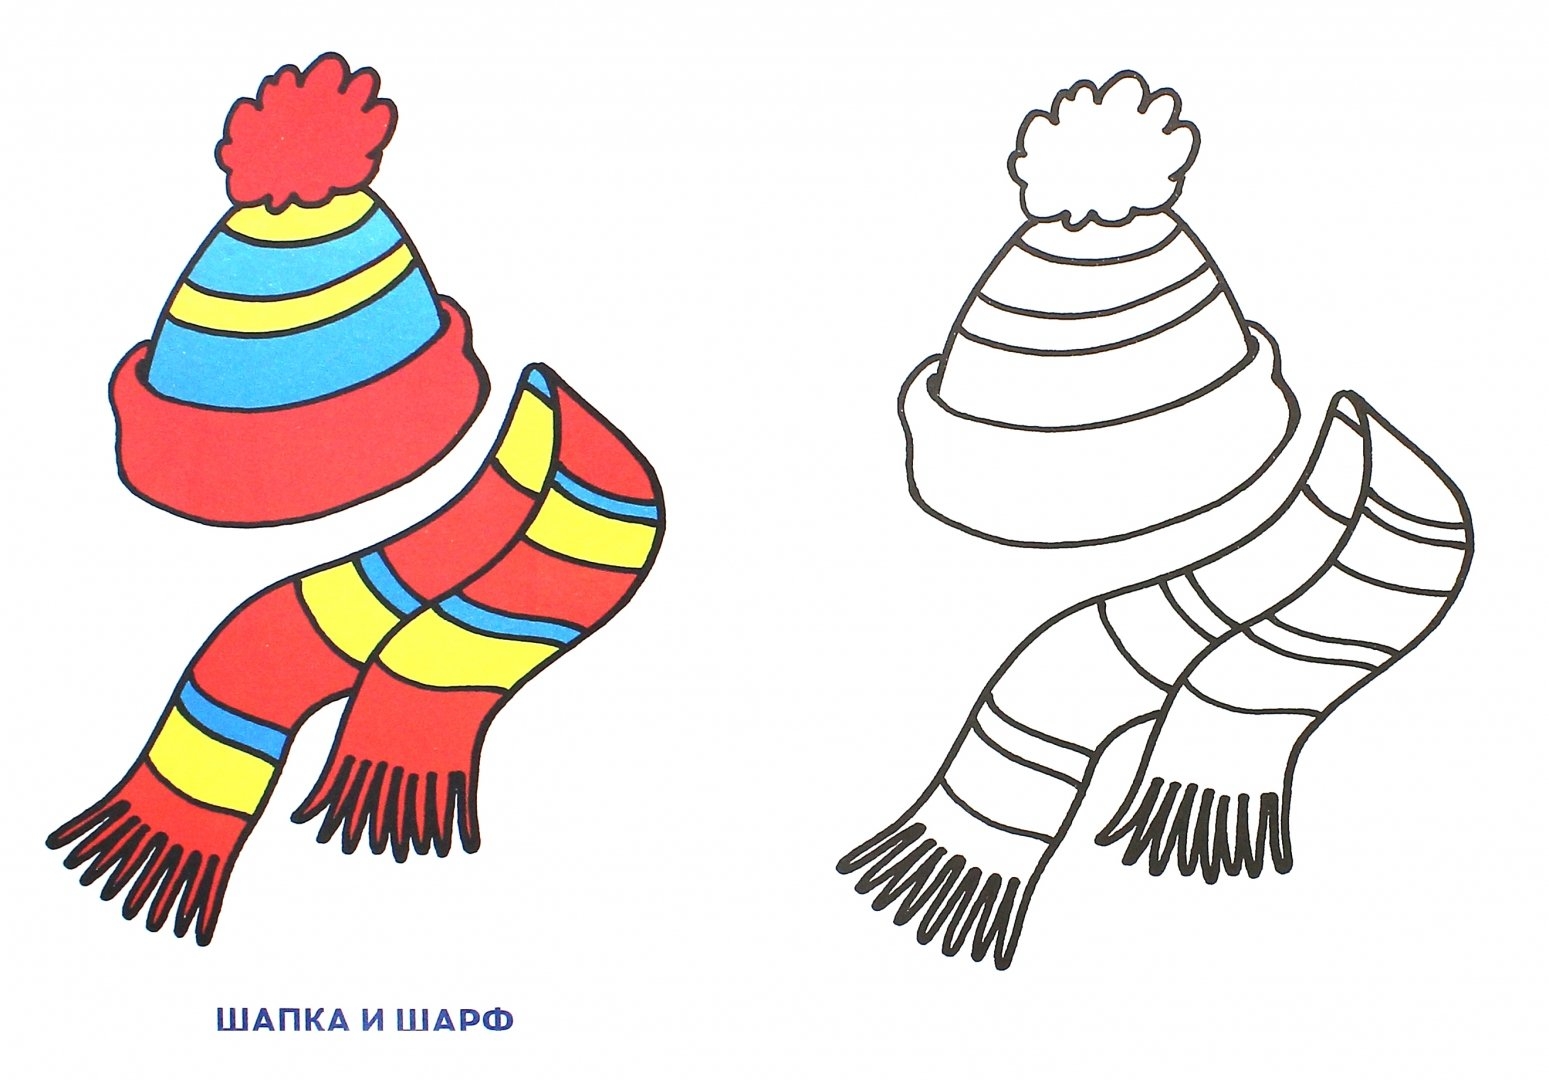 Шапка и шарф раскраска для детей